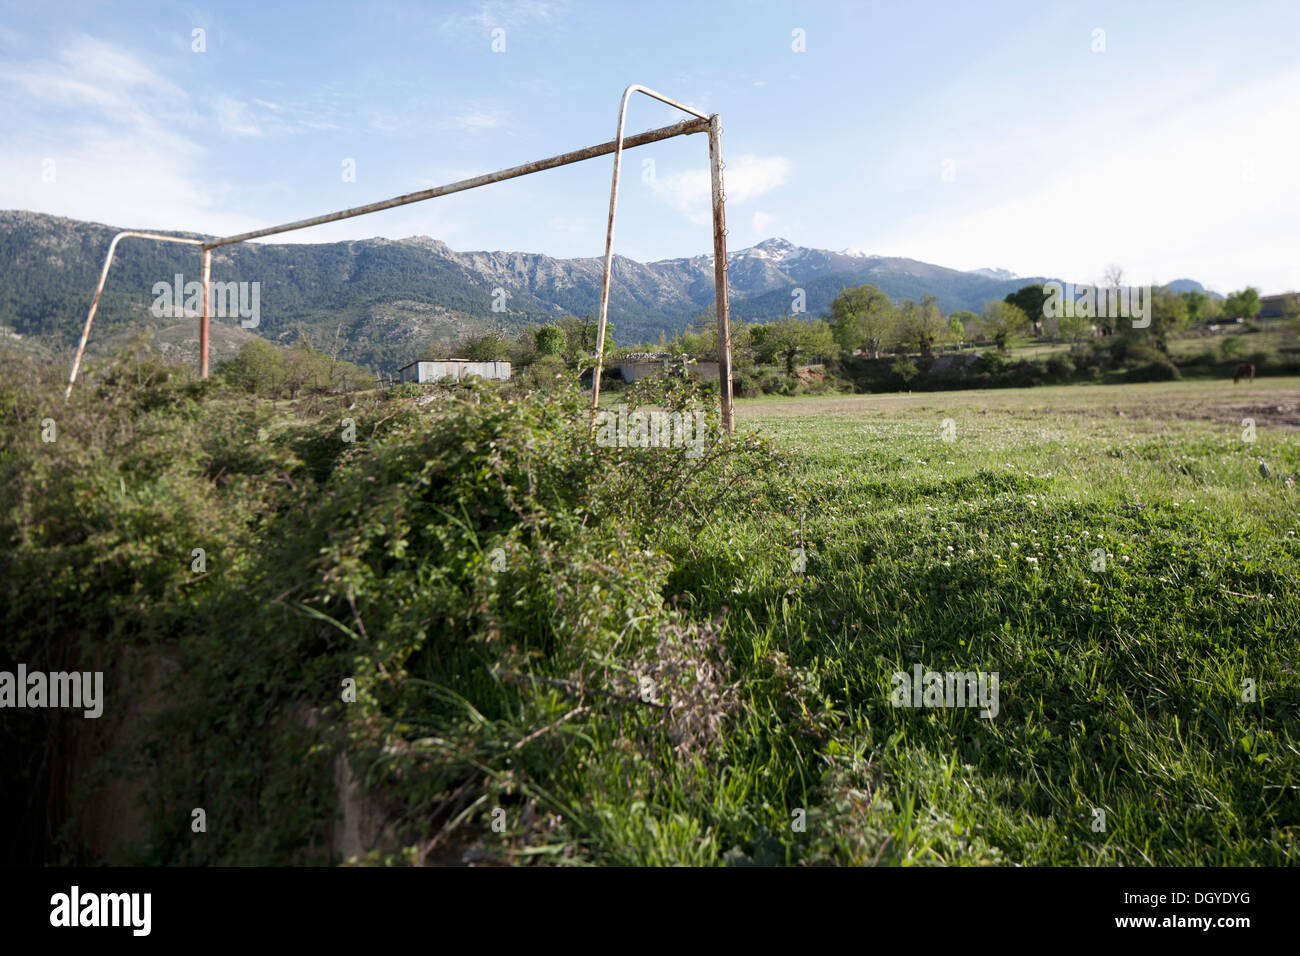 Un vieux poteau de but de soccer, montagnes en arrière-plan, Calacuccia, Corse, France Banque D'Images